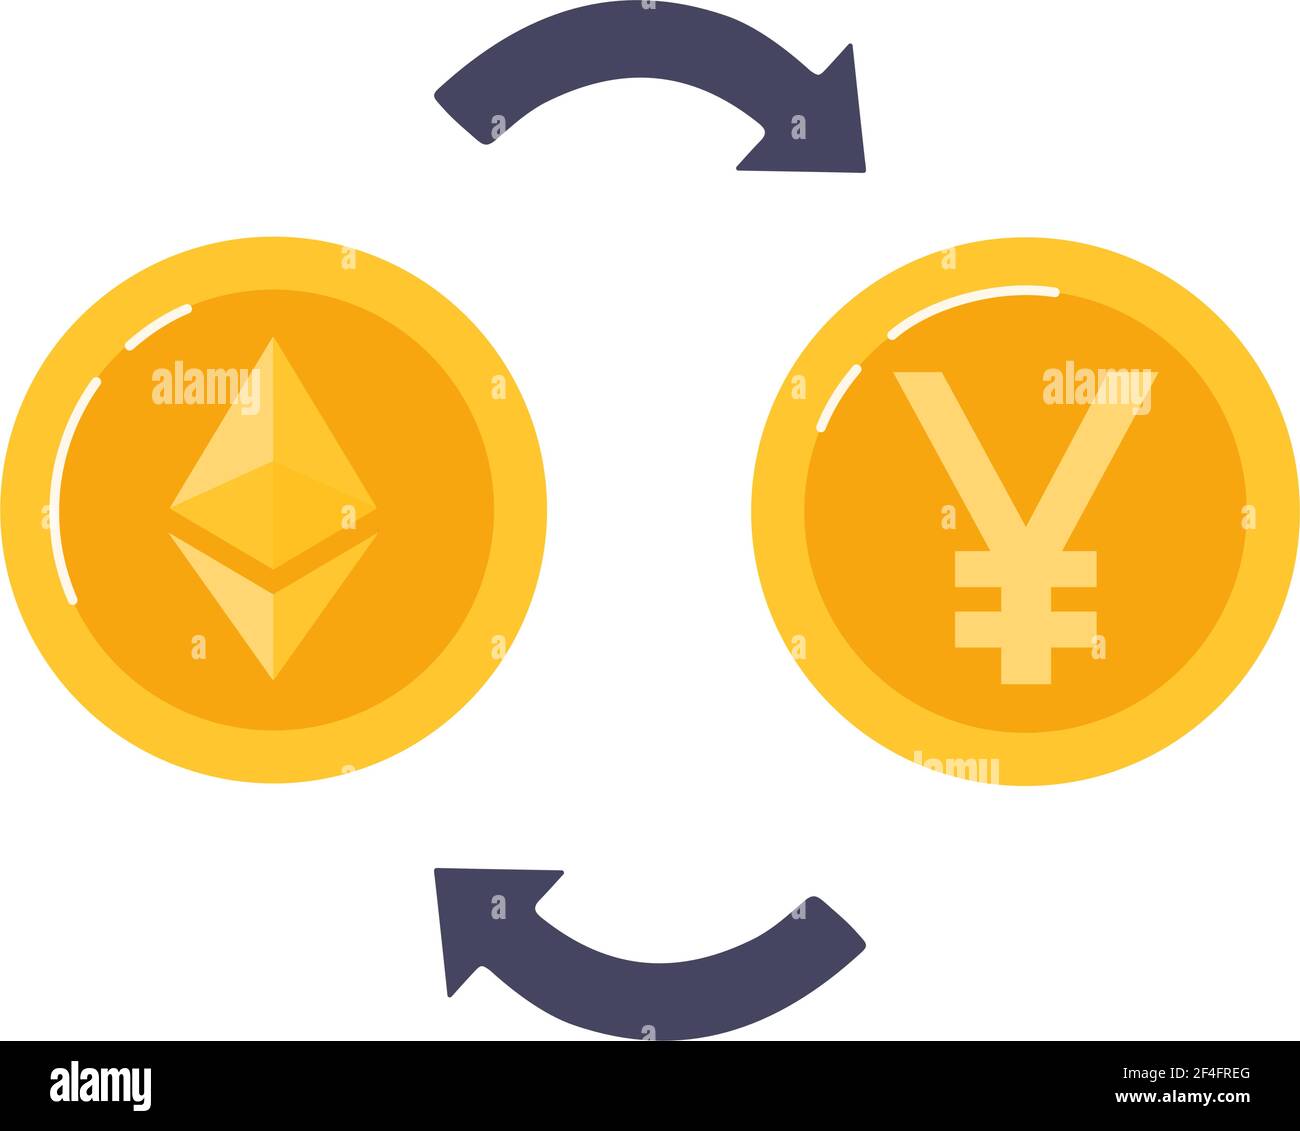 Tauschen Sie Ethereum gegen chinesischen Yuan aus. Blockchain-Technologien, Kryptowährungsmünzen. Vektorgrafik Stock Vektor